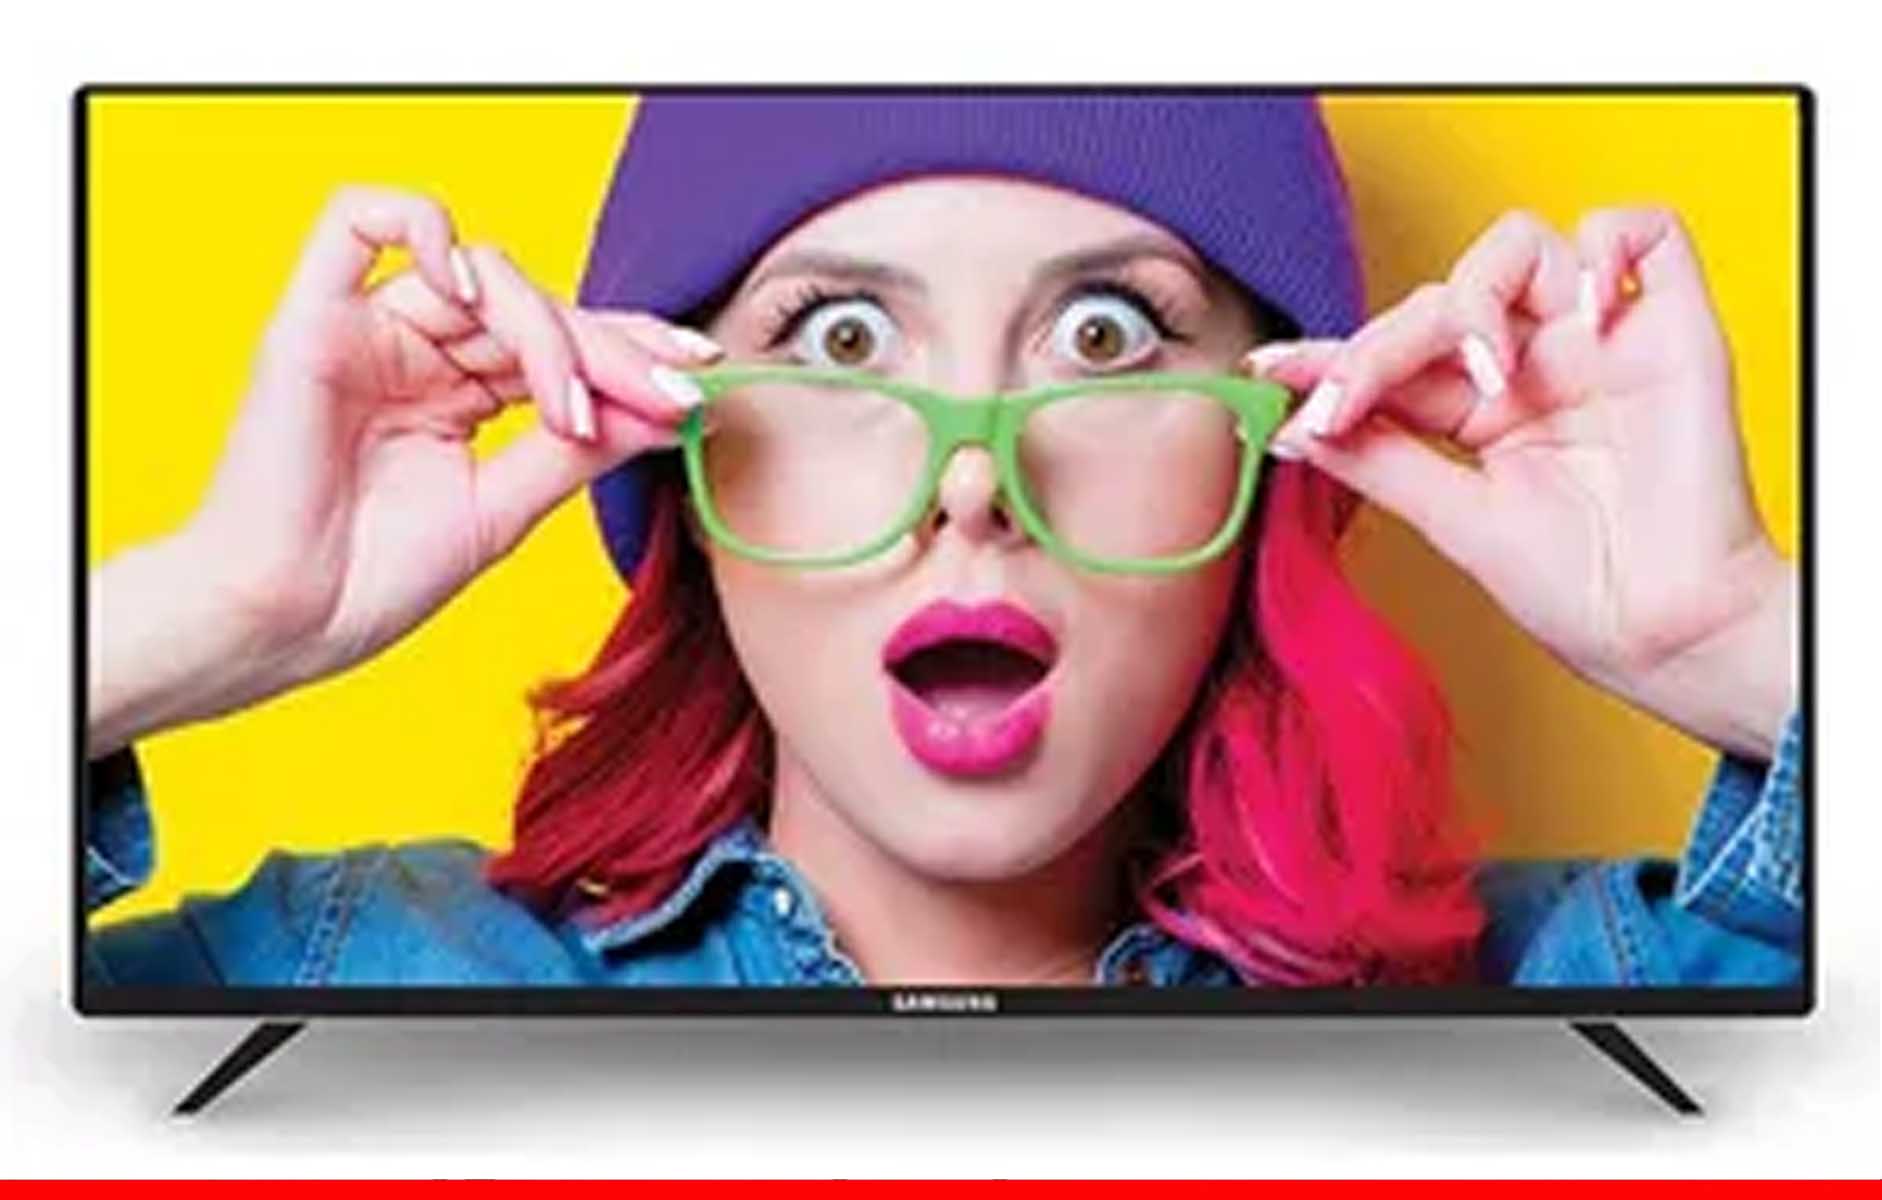 बेहद सस्ते में खरीदें 32 इंच की दमदार Smart TV, लिस्ट में रियलमी